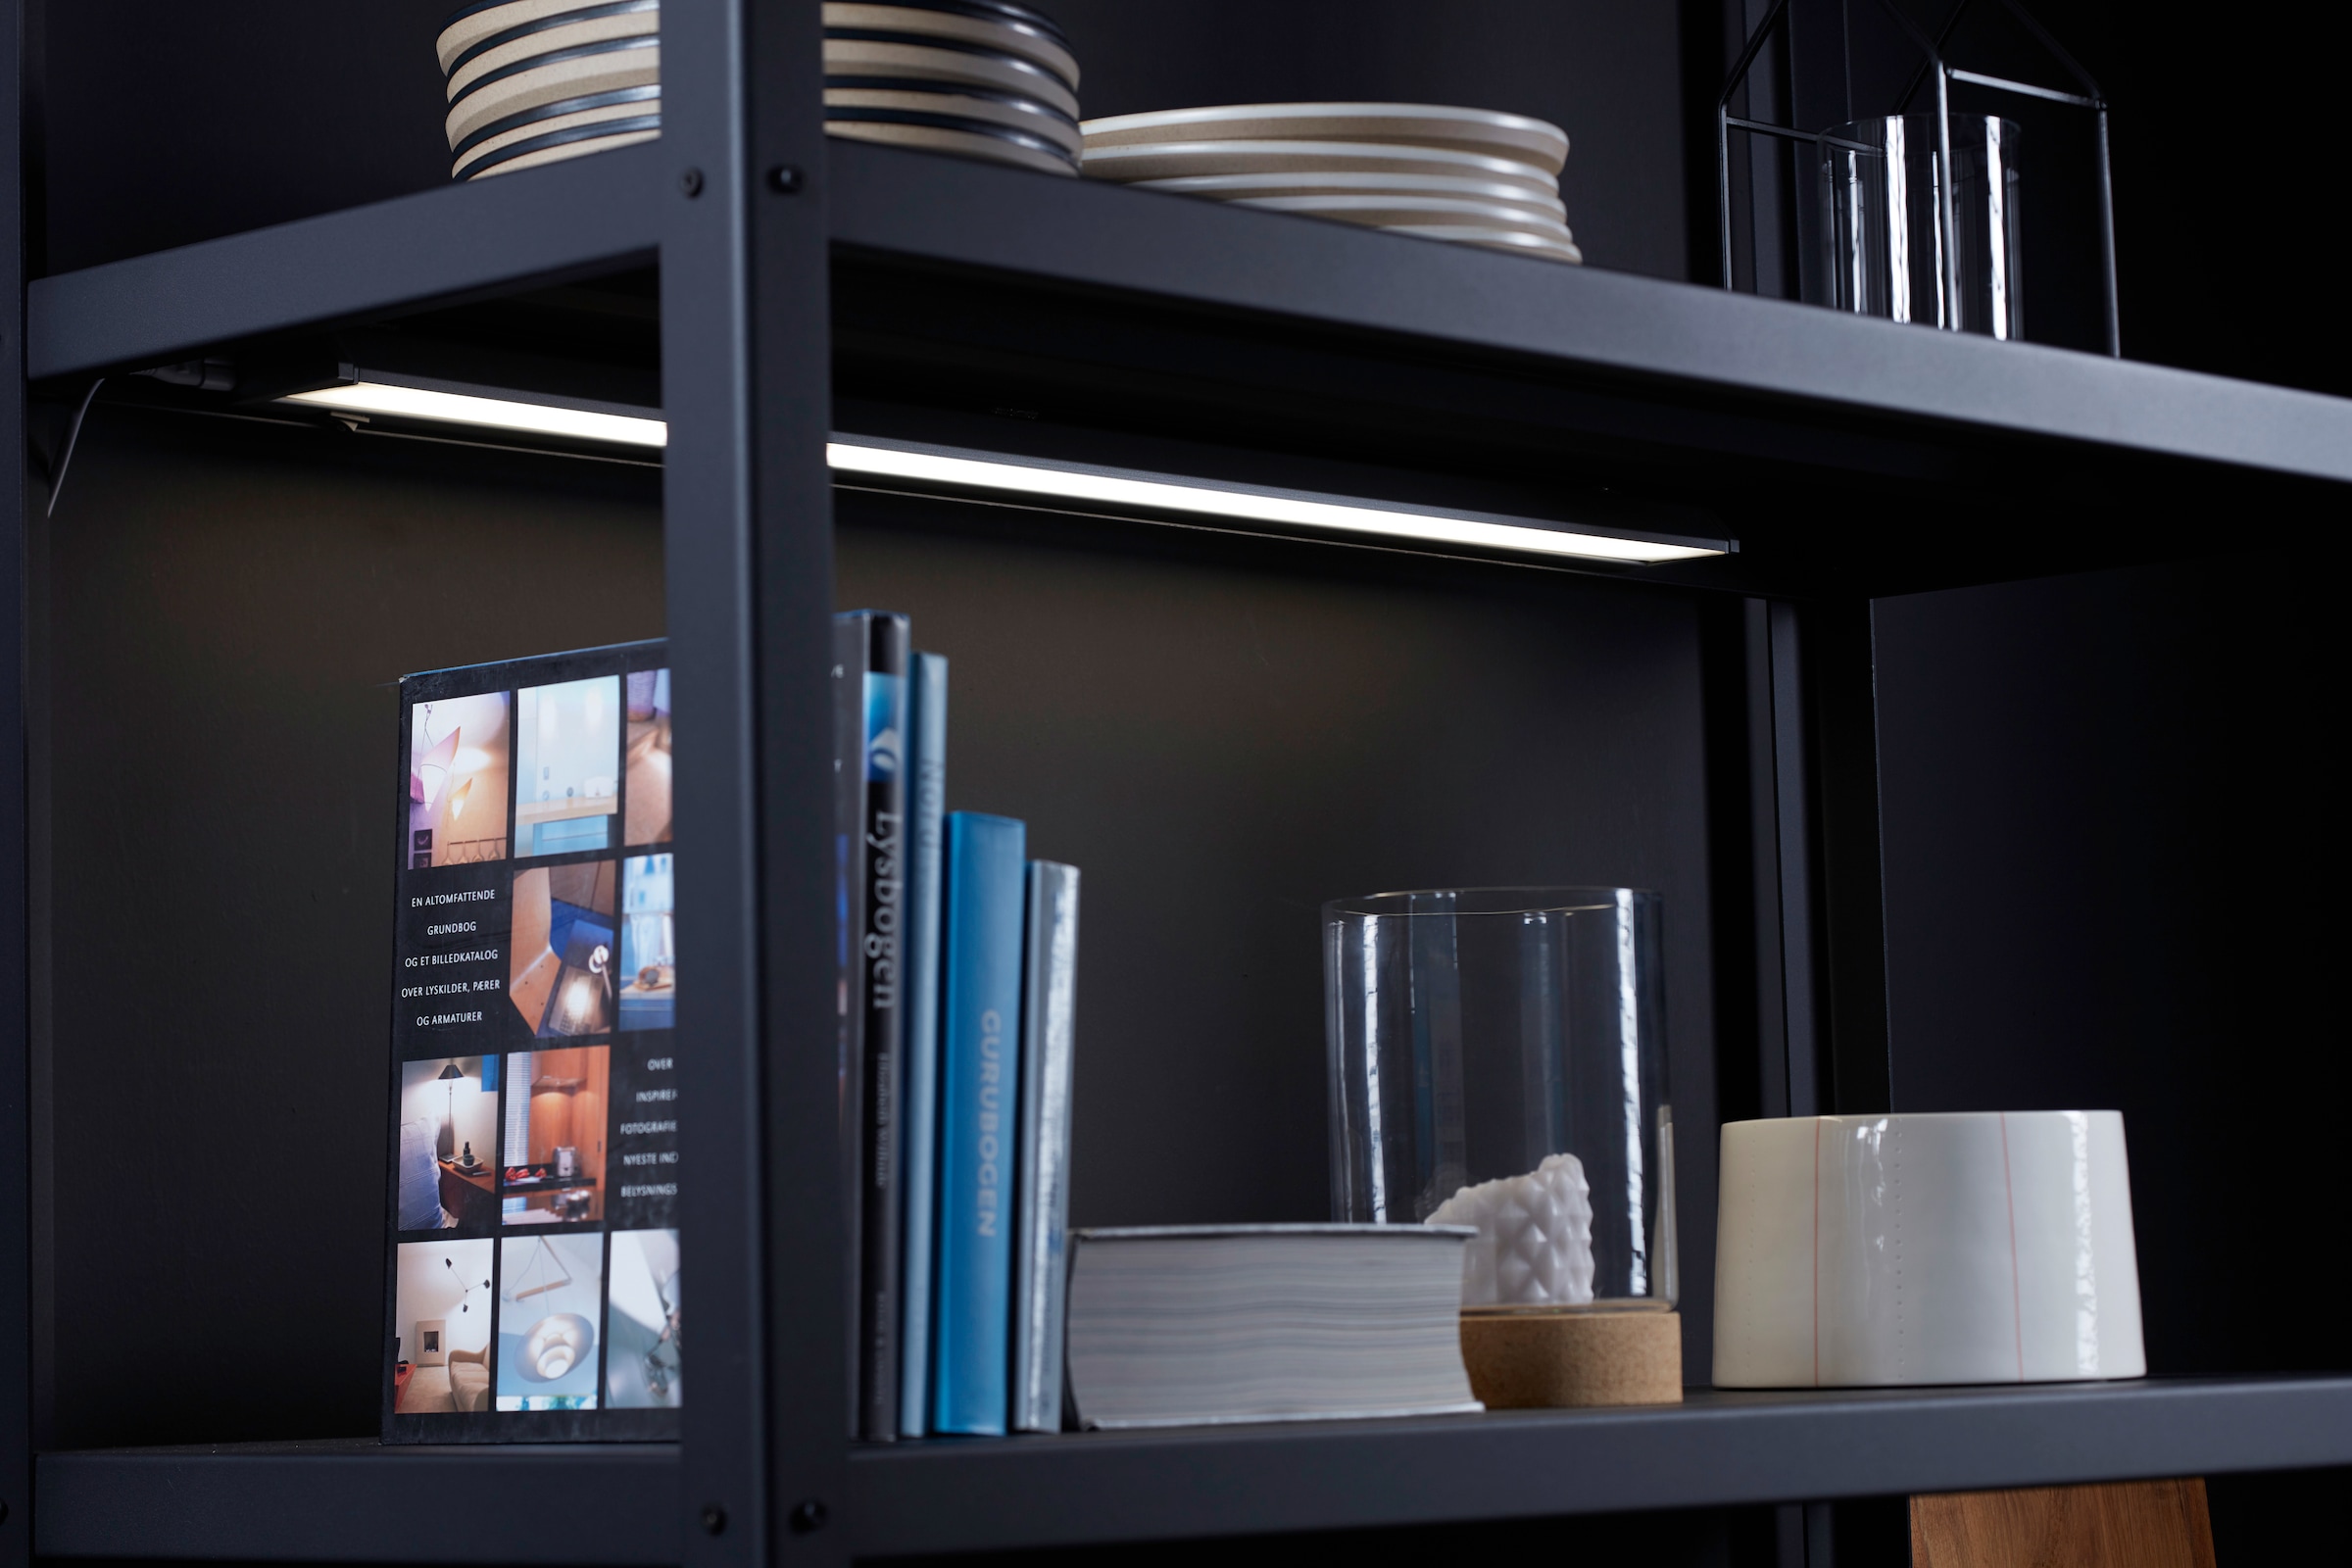 Loevschall LED Unterbauleuchte »LED Striplight 579mm«, Hohe Lichtausbeute,  schwenkbar online kaufen | mit 3 Jahren XXL Garantie